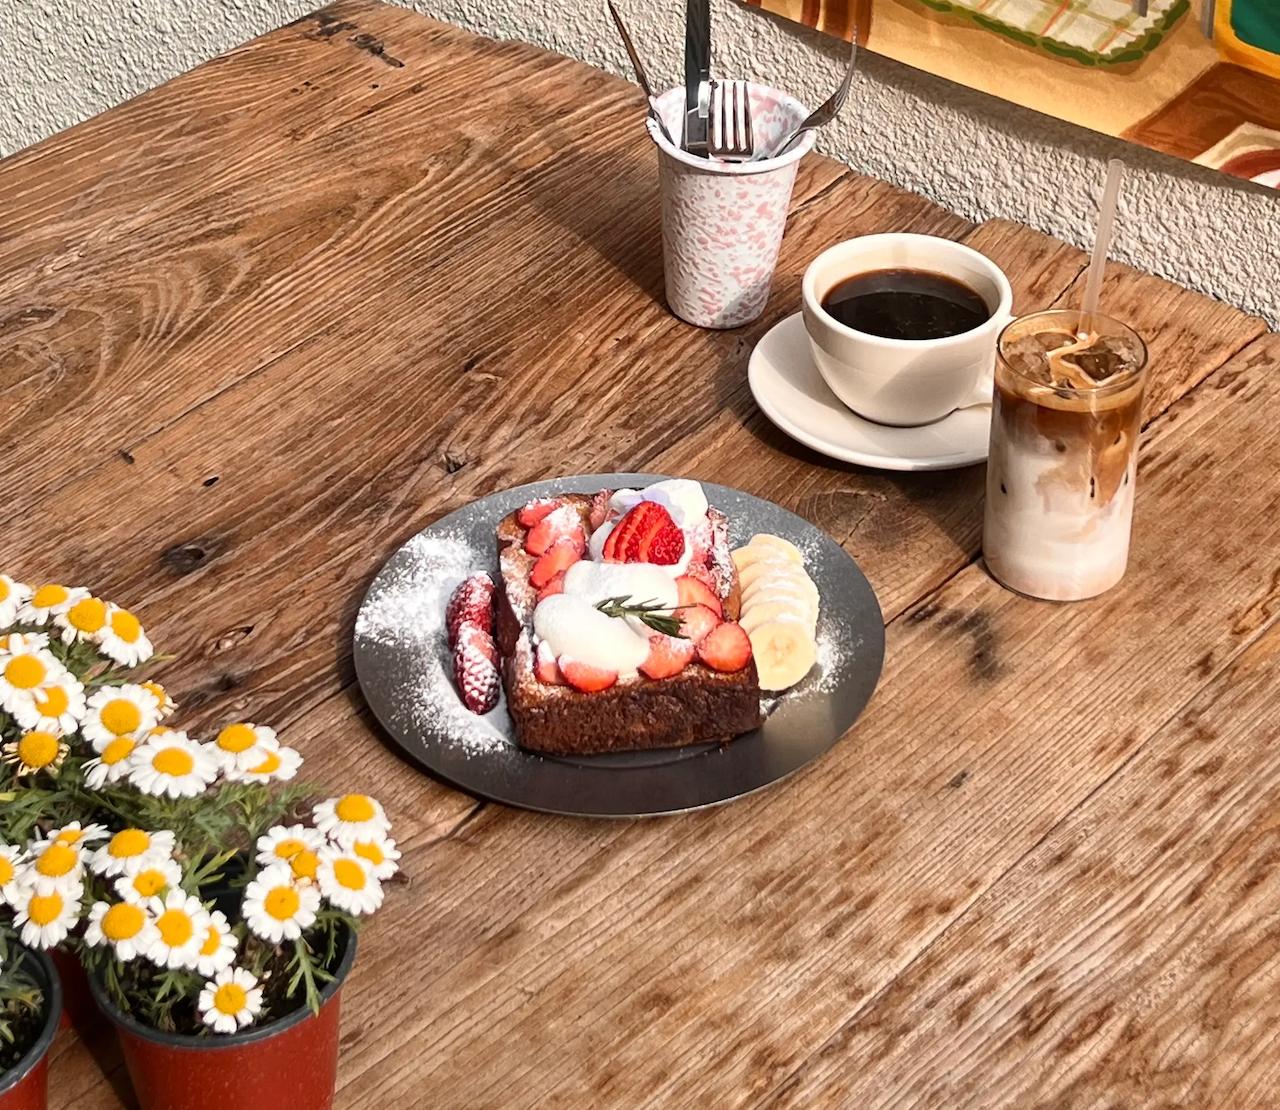 韓國/首爾 [弘大/延南洞] 推薦早午餐咖啡店